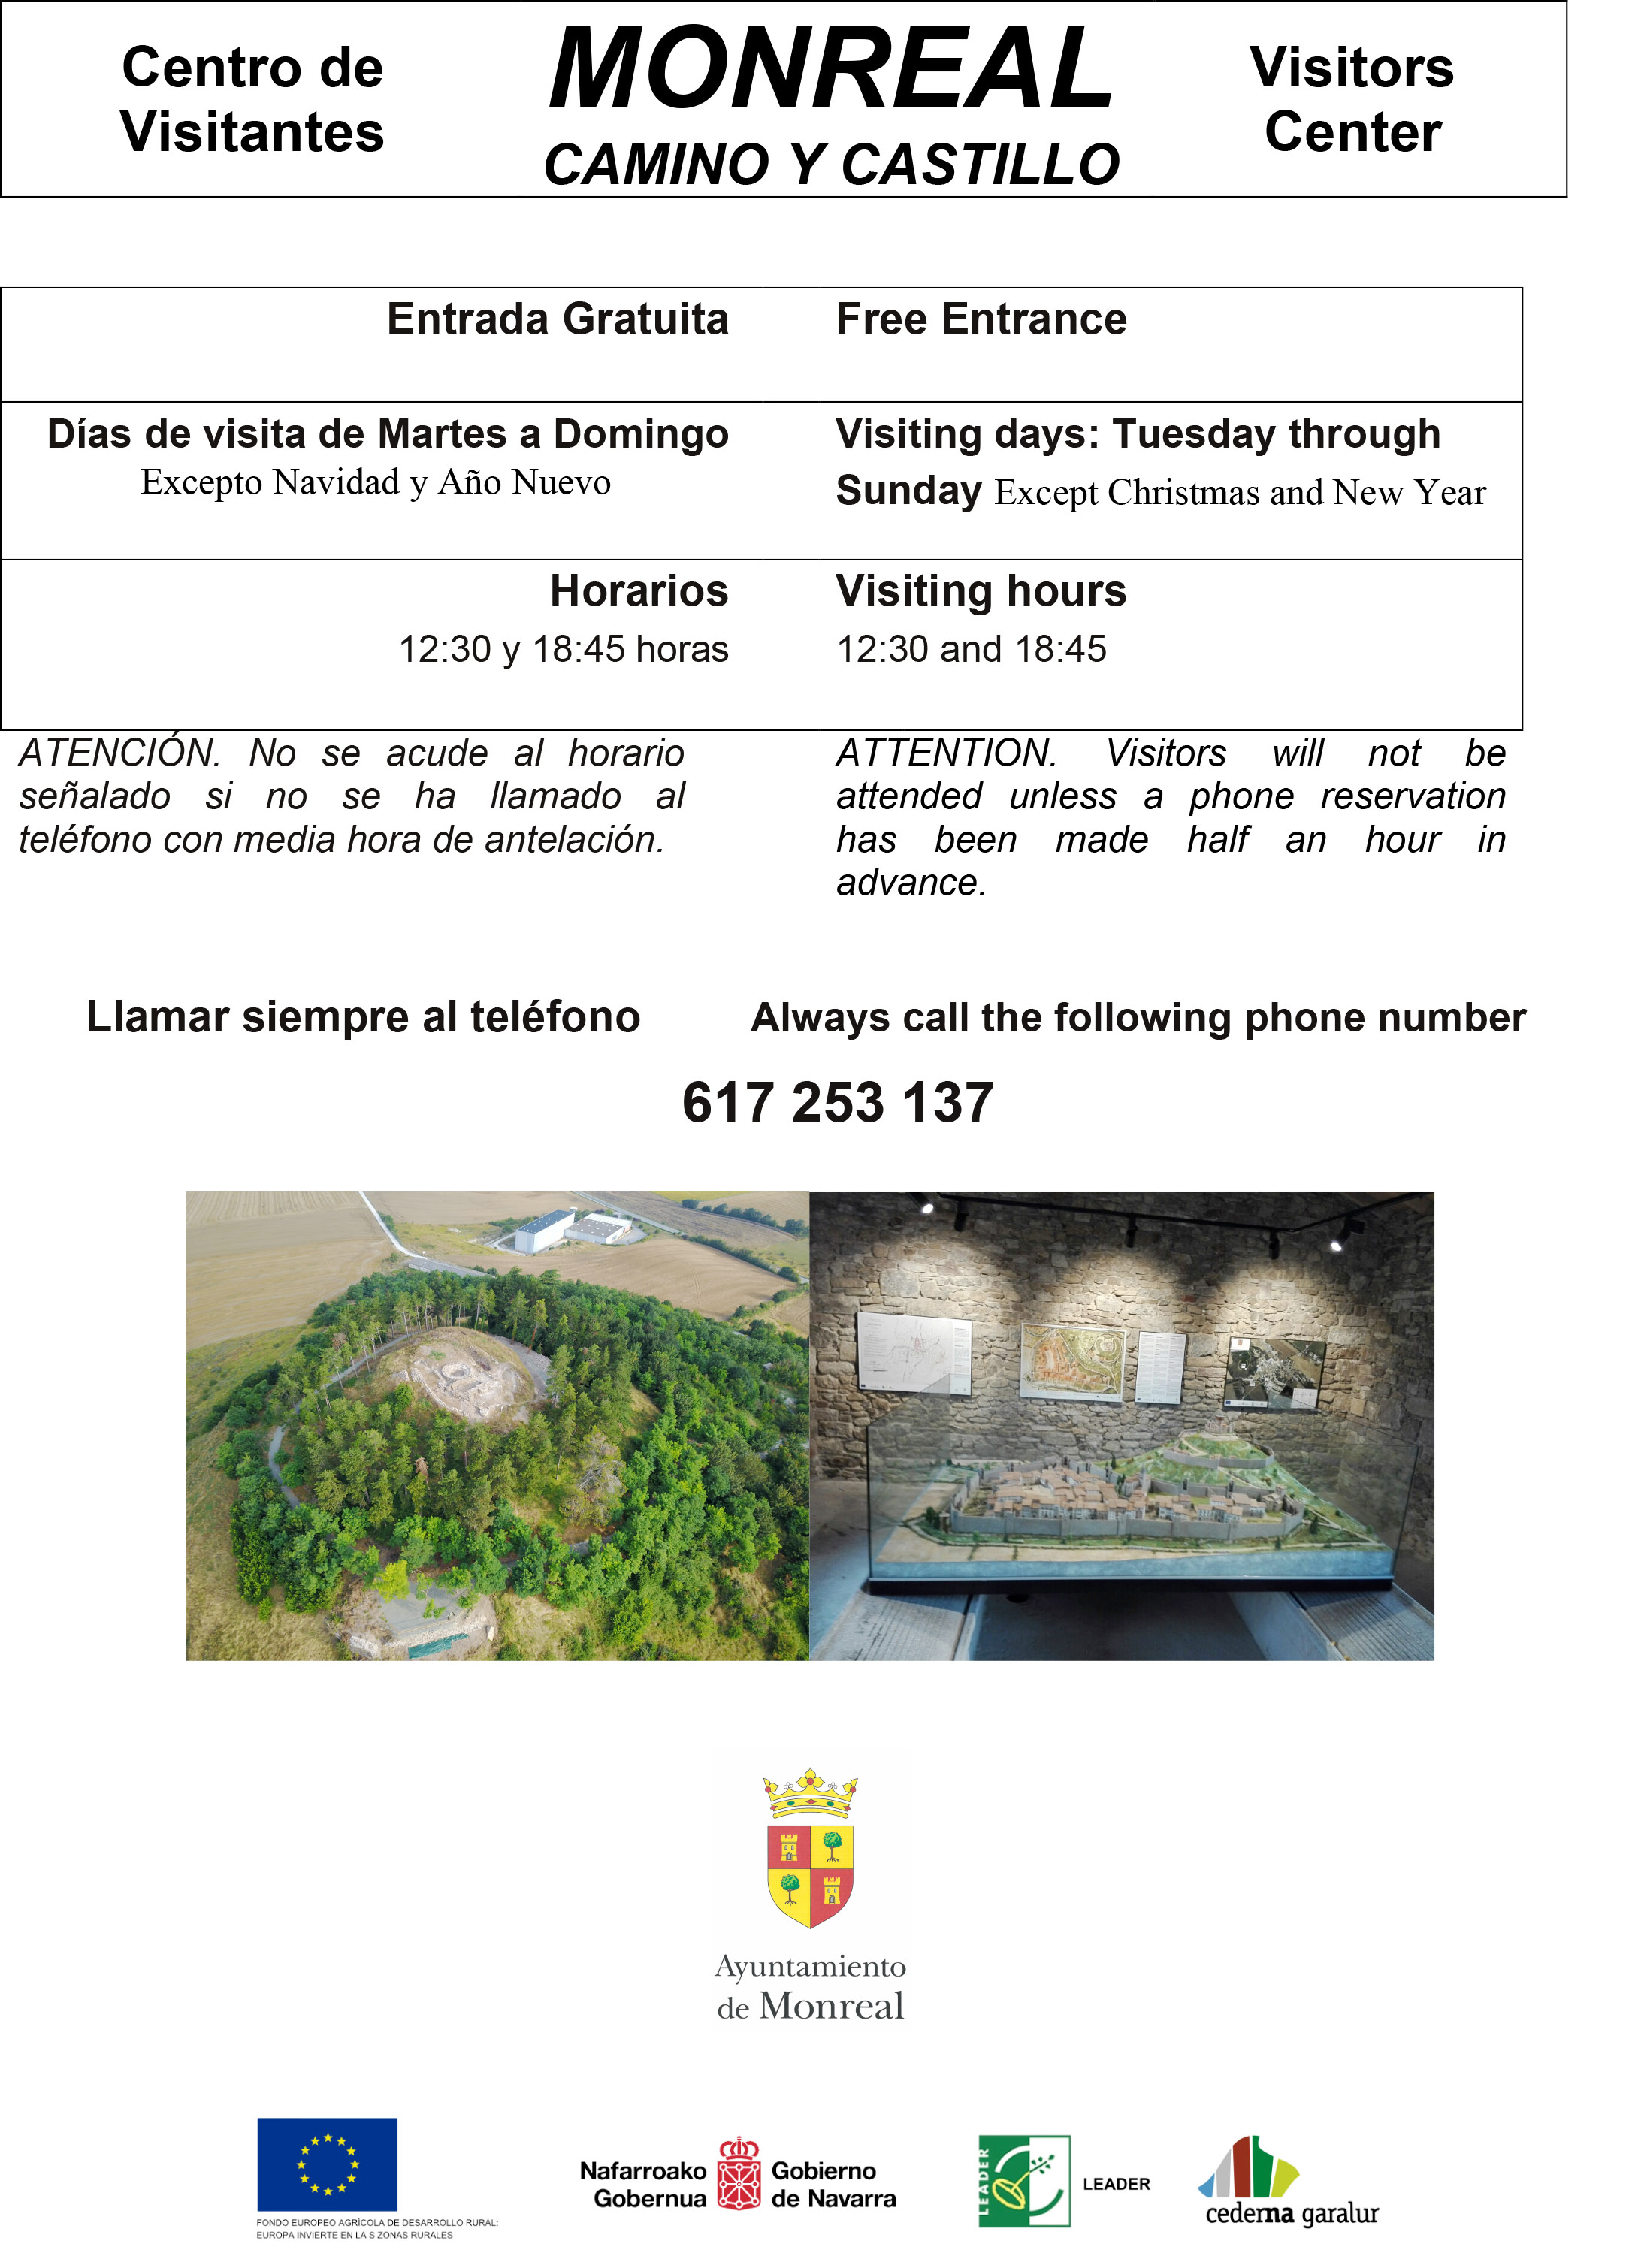 Centro de Visitantes MONREAL «CAMINO Y CASTILLO» / Erdigunea Monreal bisitariak «CAMINO Y CASTILLO»